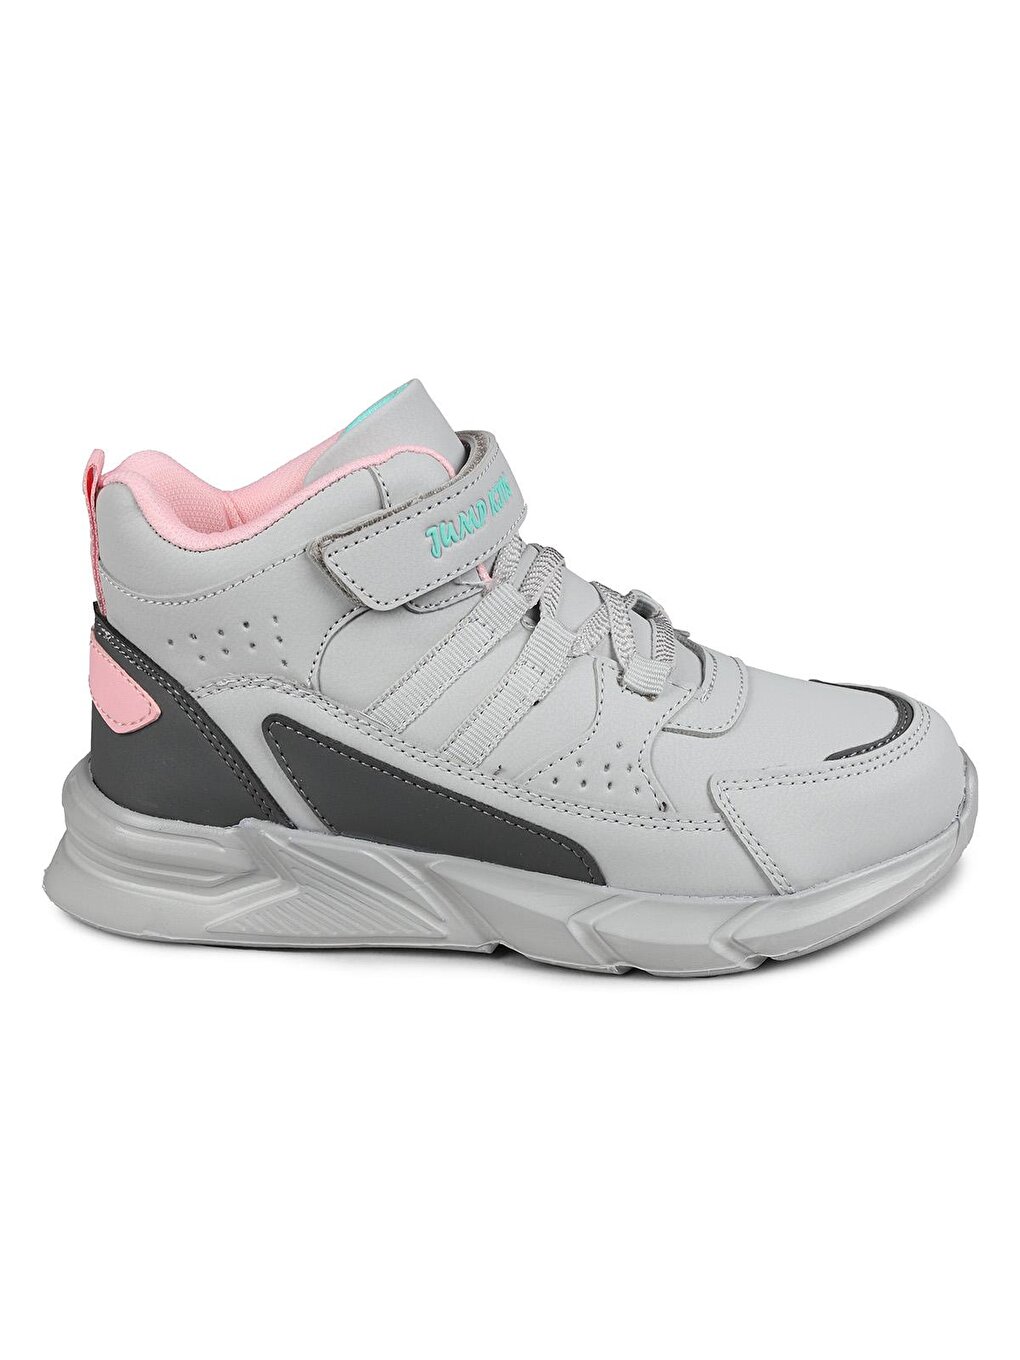 Спортивная обувь для мальчиков Jump, серо-розовый